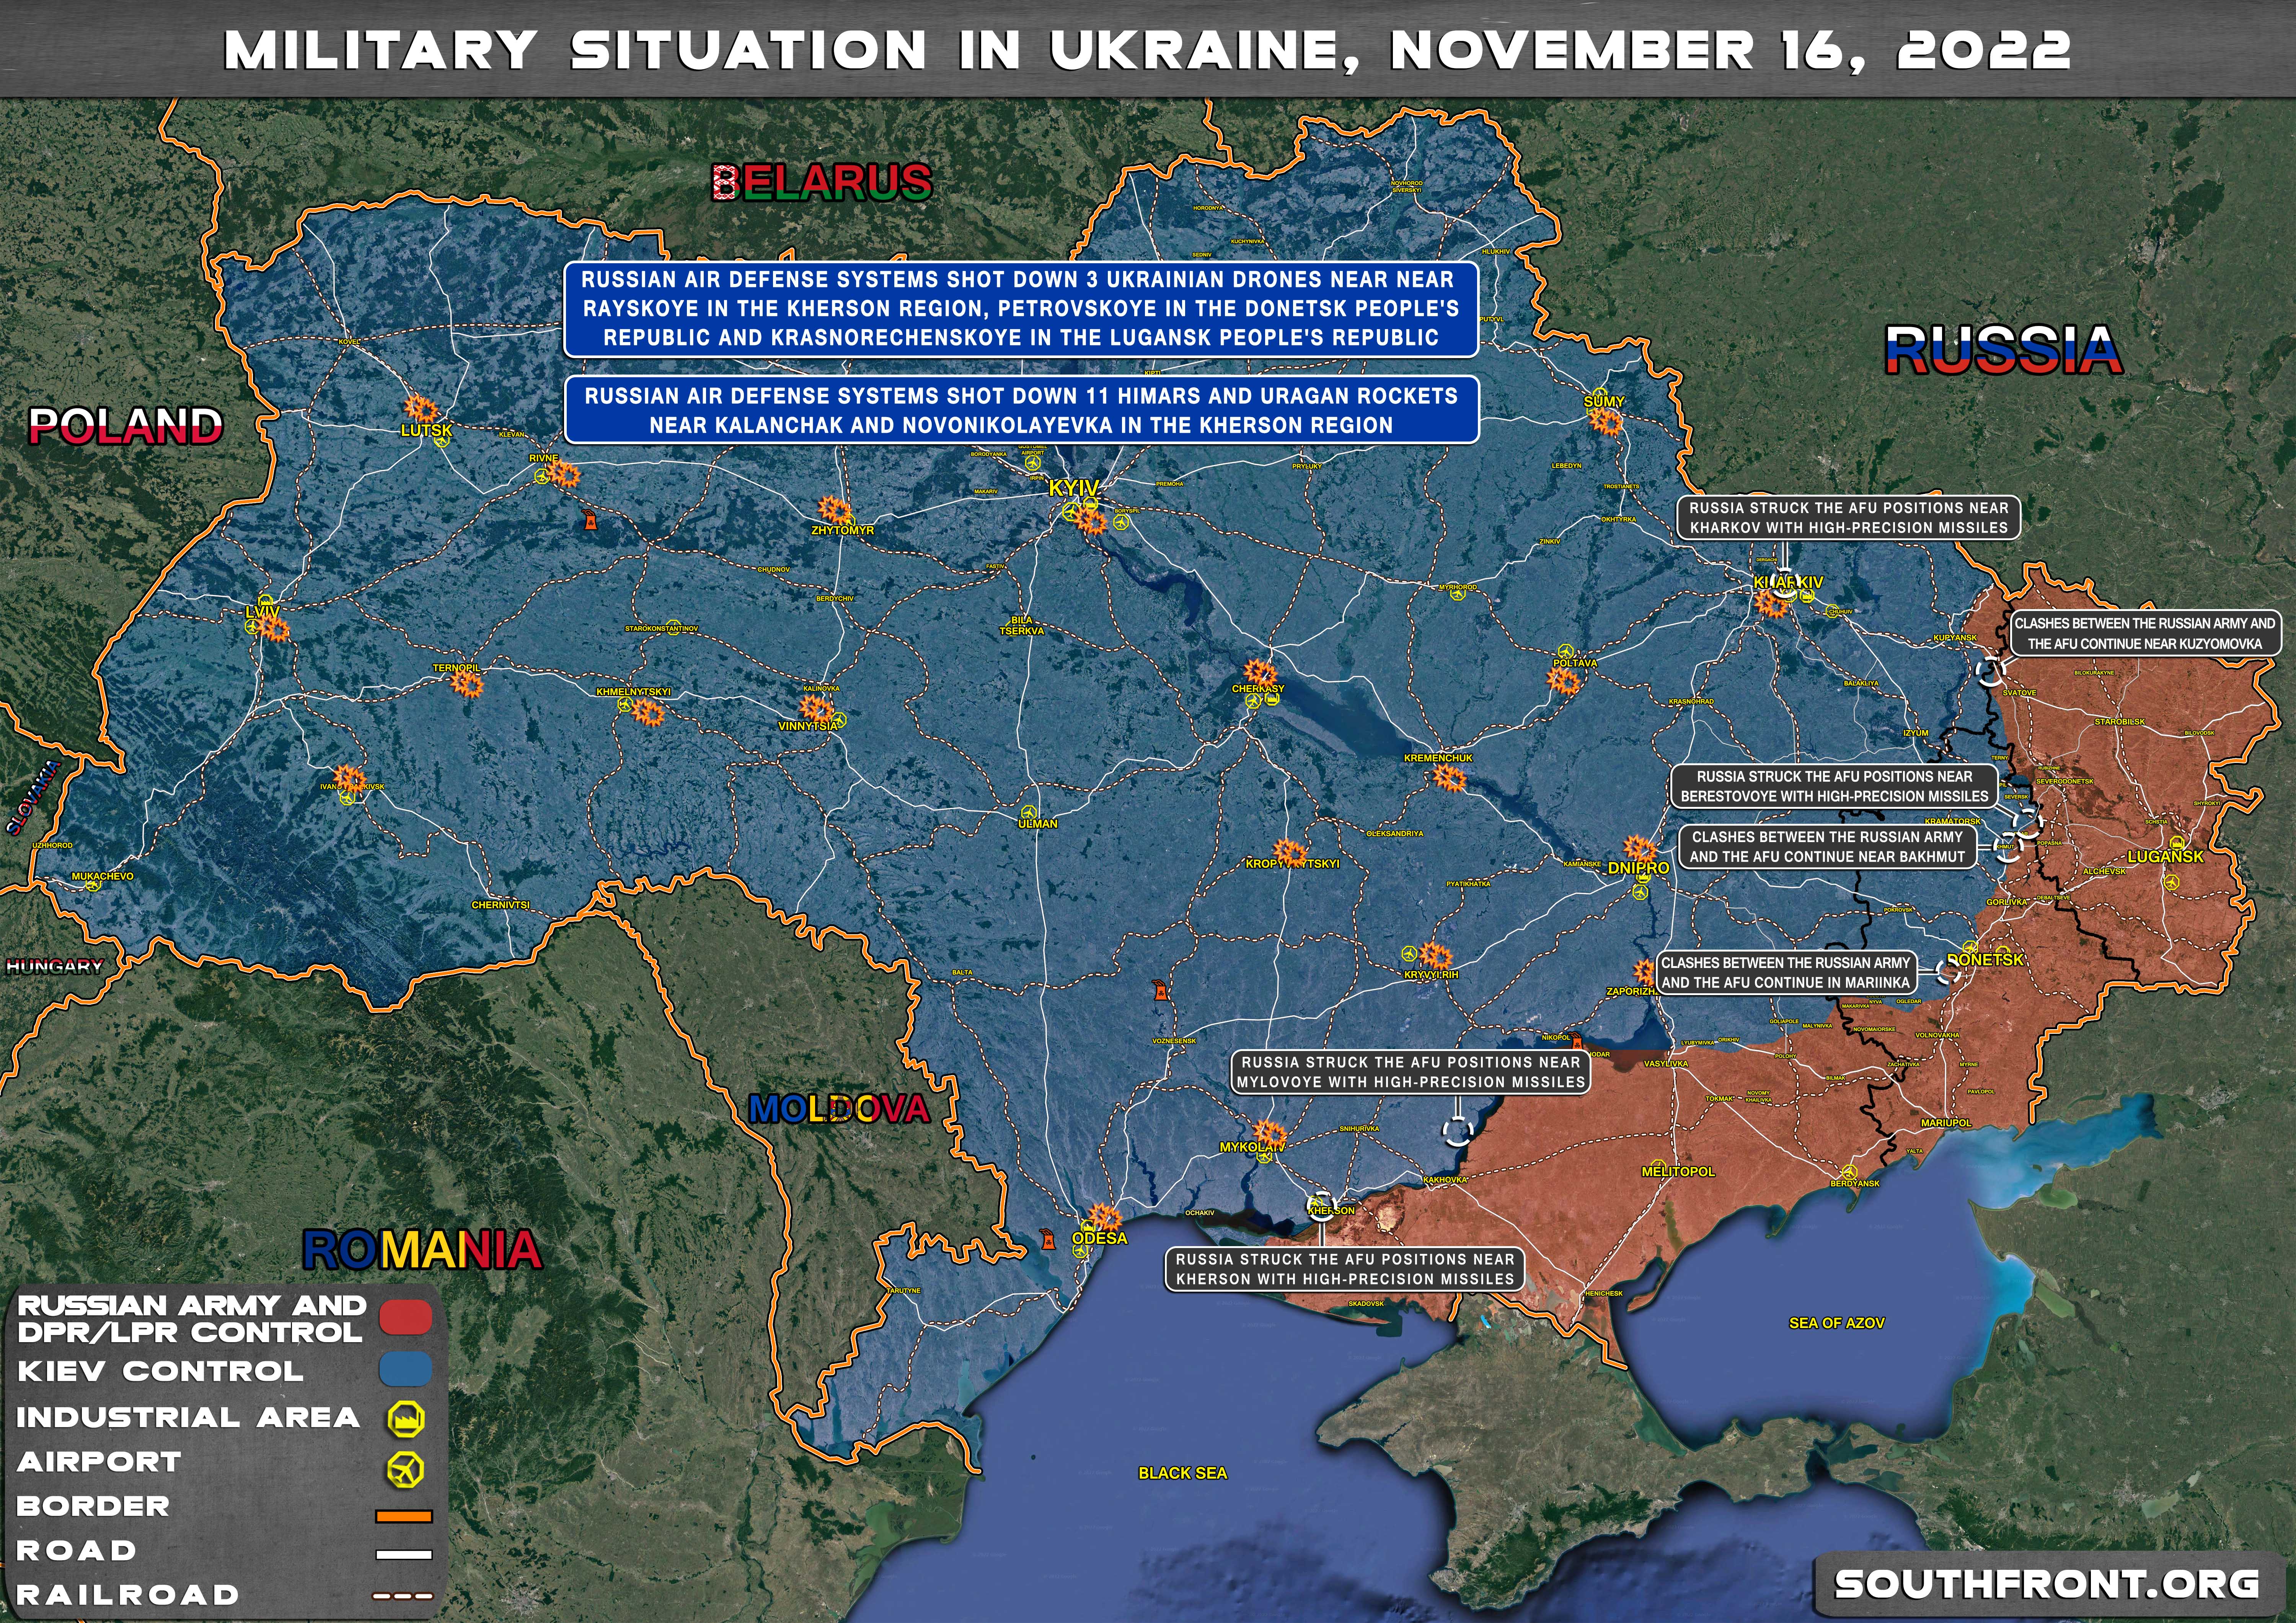 16november2022_Ukraine_map.jpg